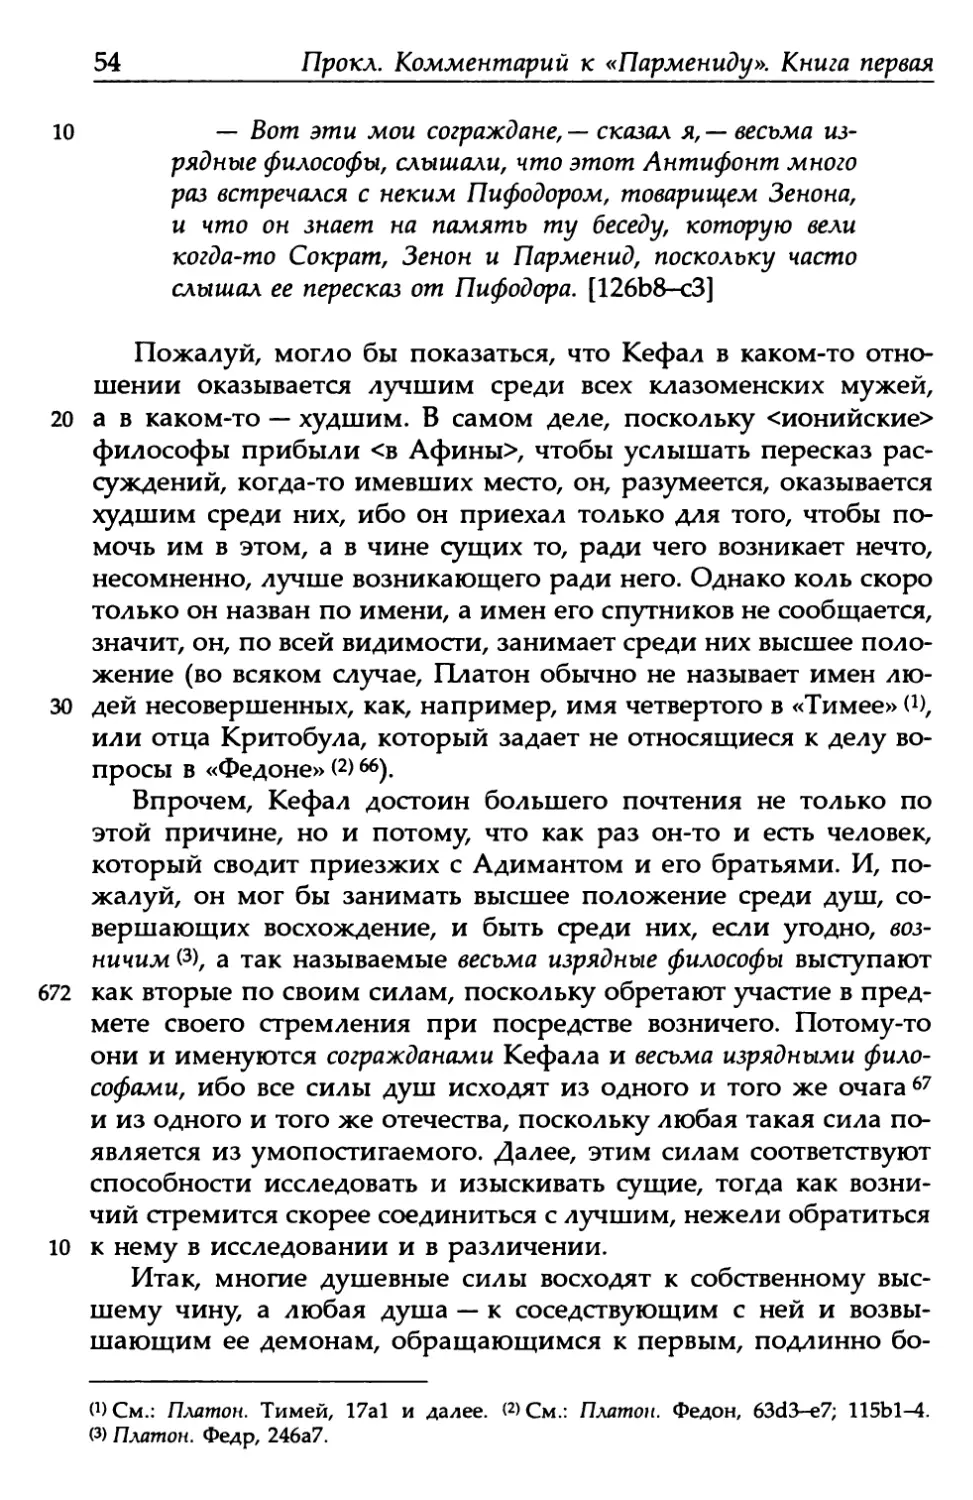 «Парменид», 126b8-с3